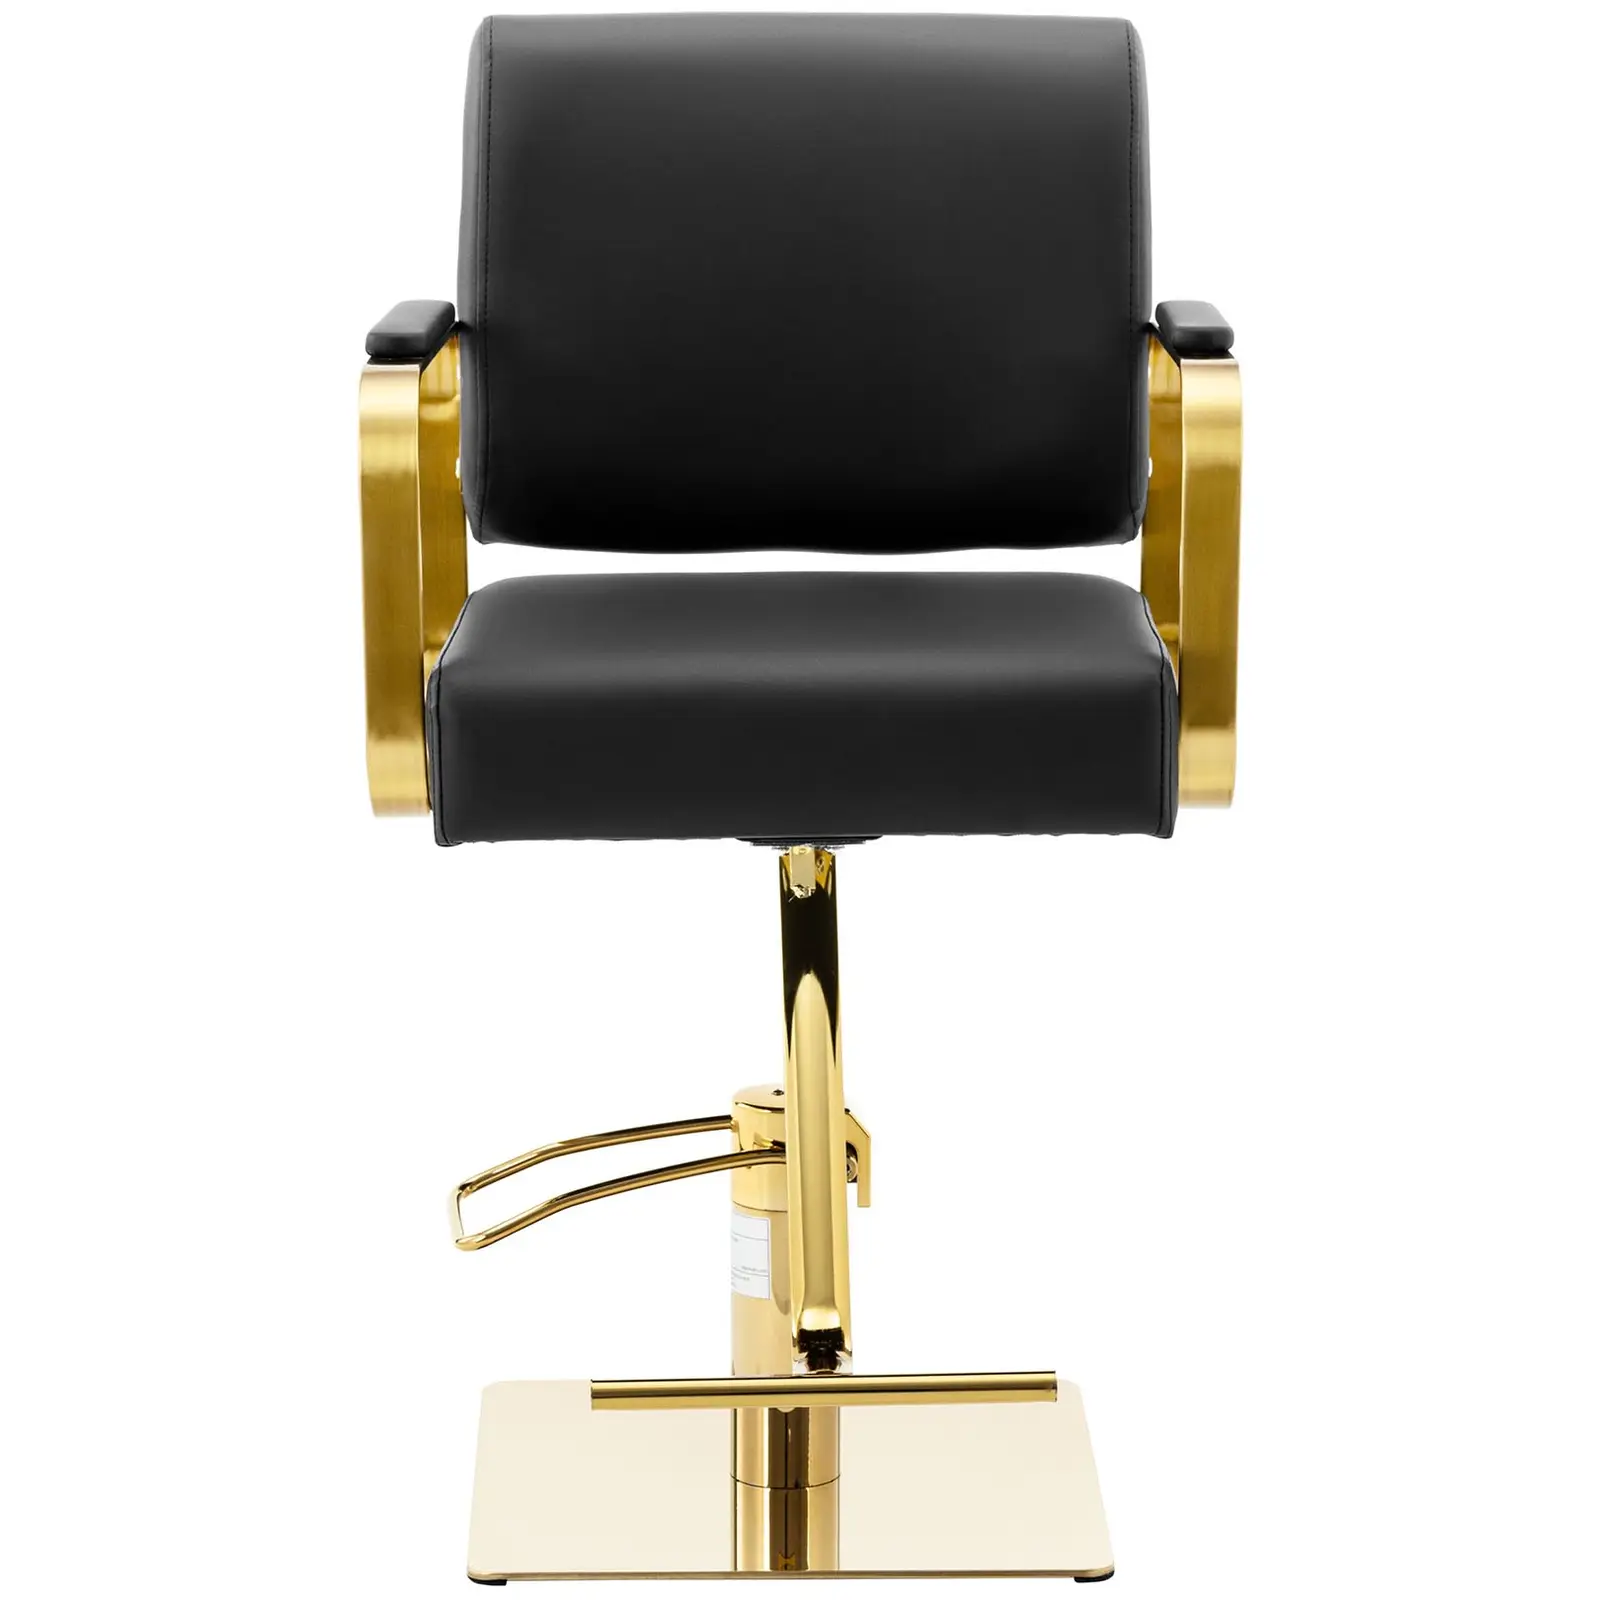 Produtos recondicionados Cadeira de cabeleireiro com apoio para os pés - 900 - 1050 mm - 200 kg - Preto, Dourado